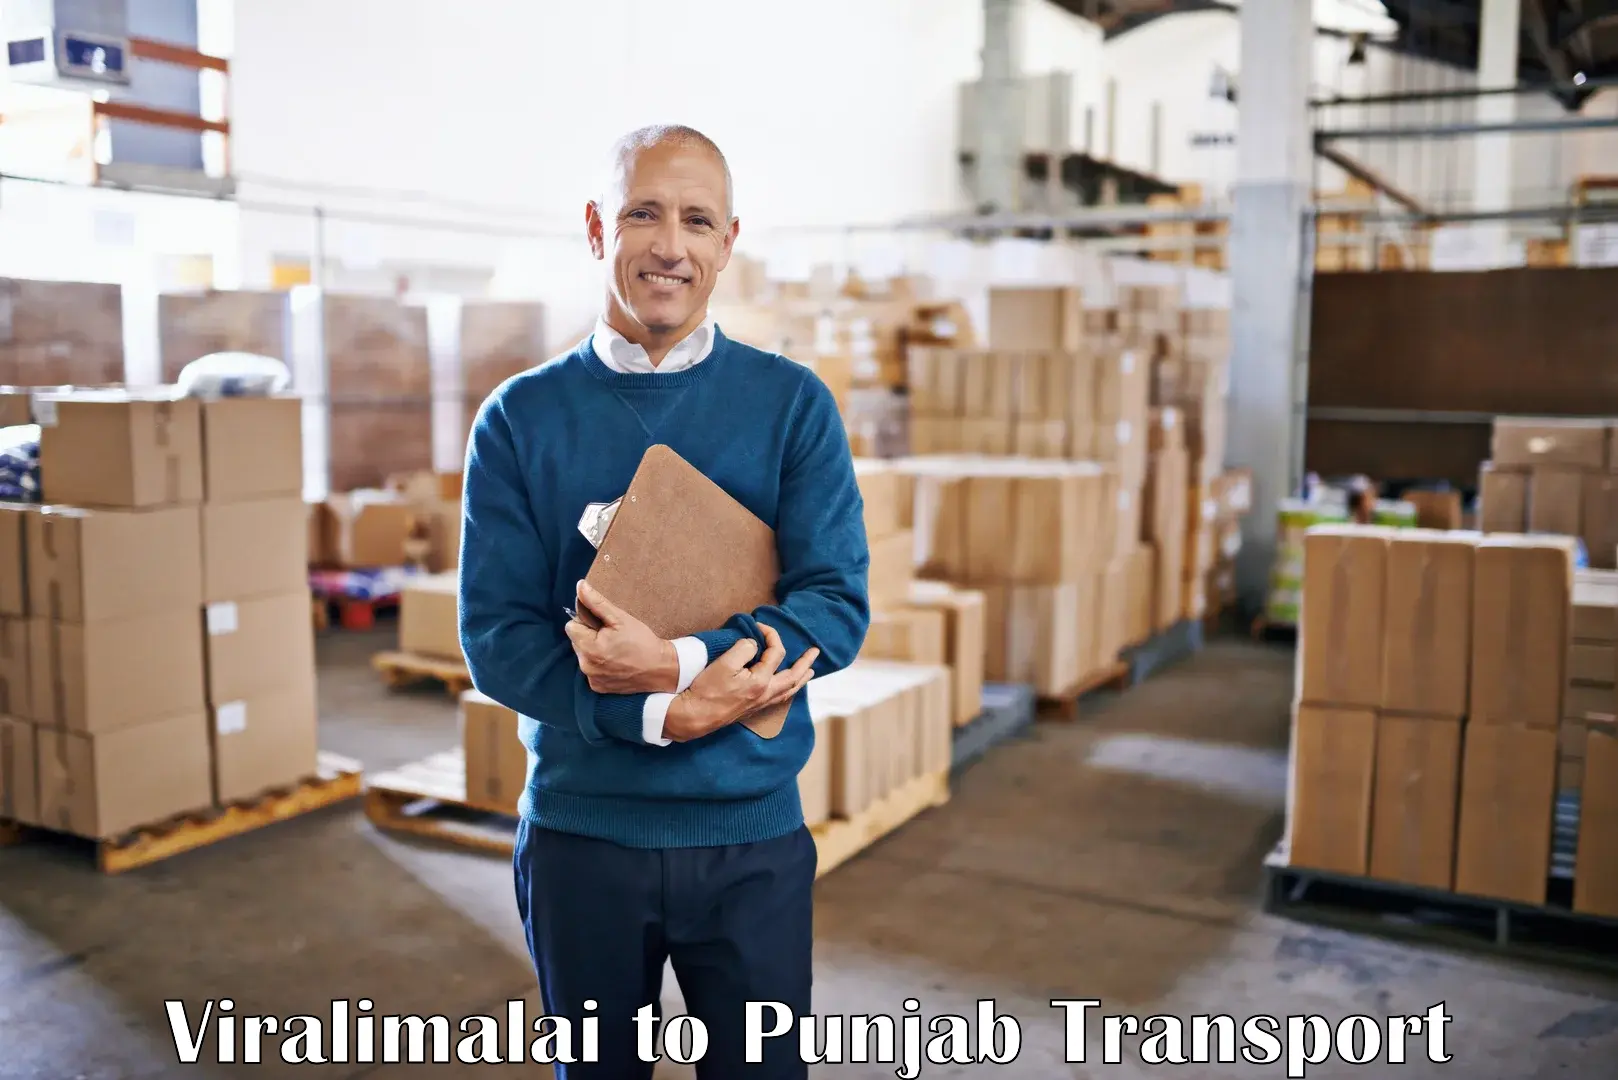 Pick up transport service Viralimalai to Pathankot